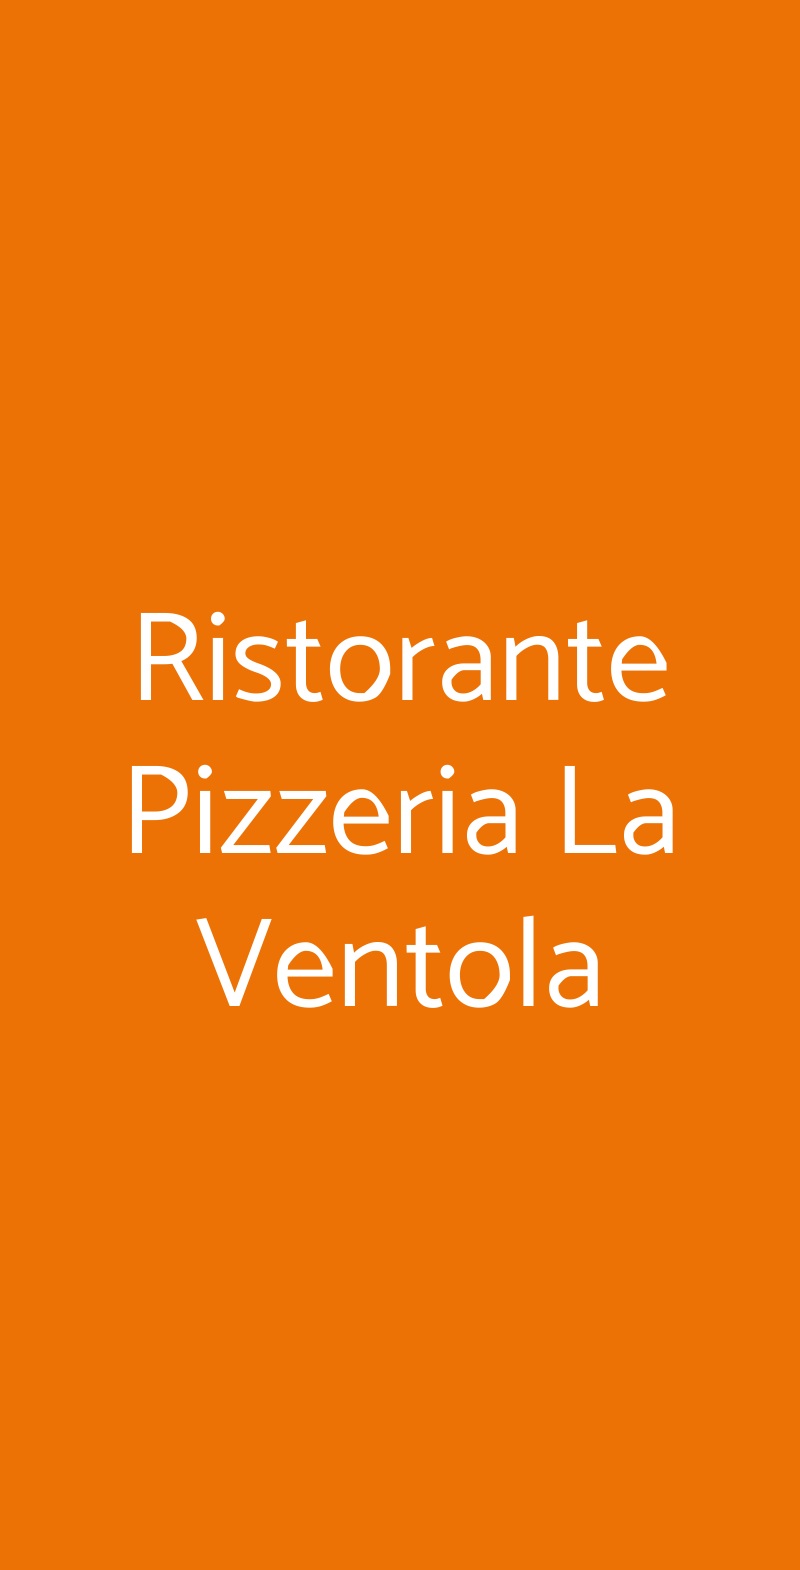 Ristorante Pizzeria La Ventola Rosignano Marittimo menù 1 pagina